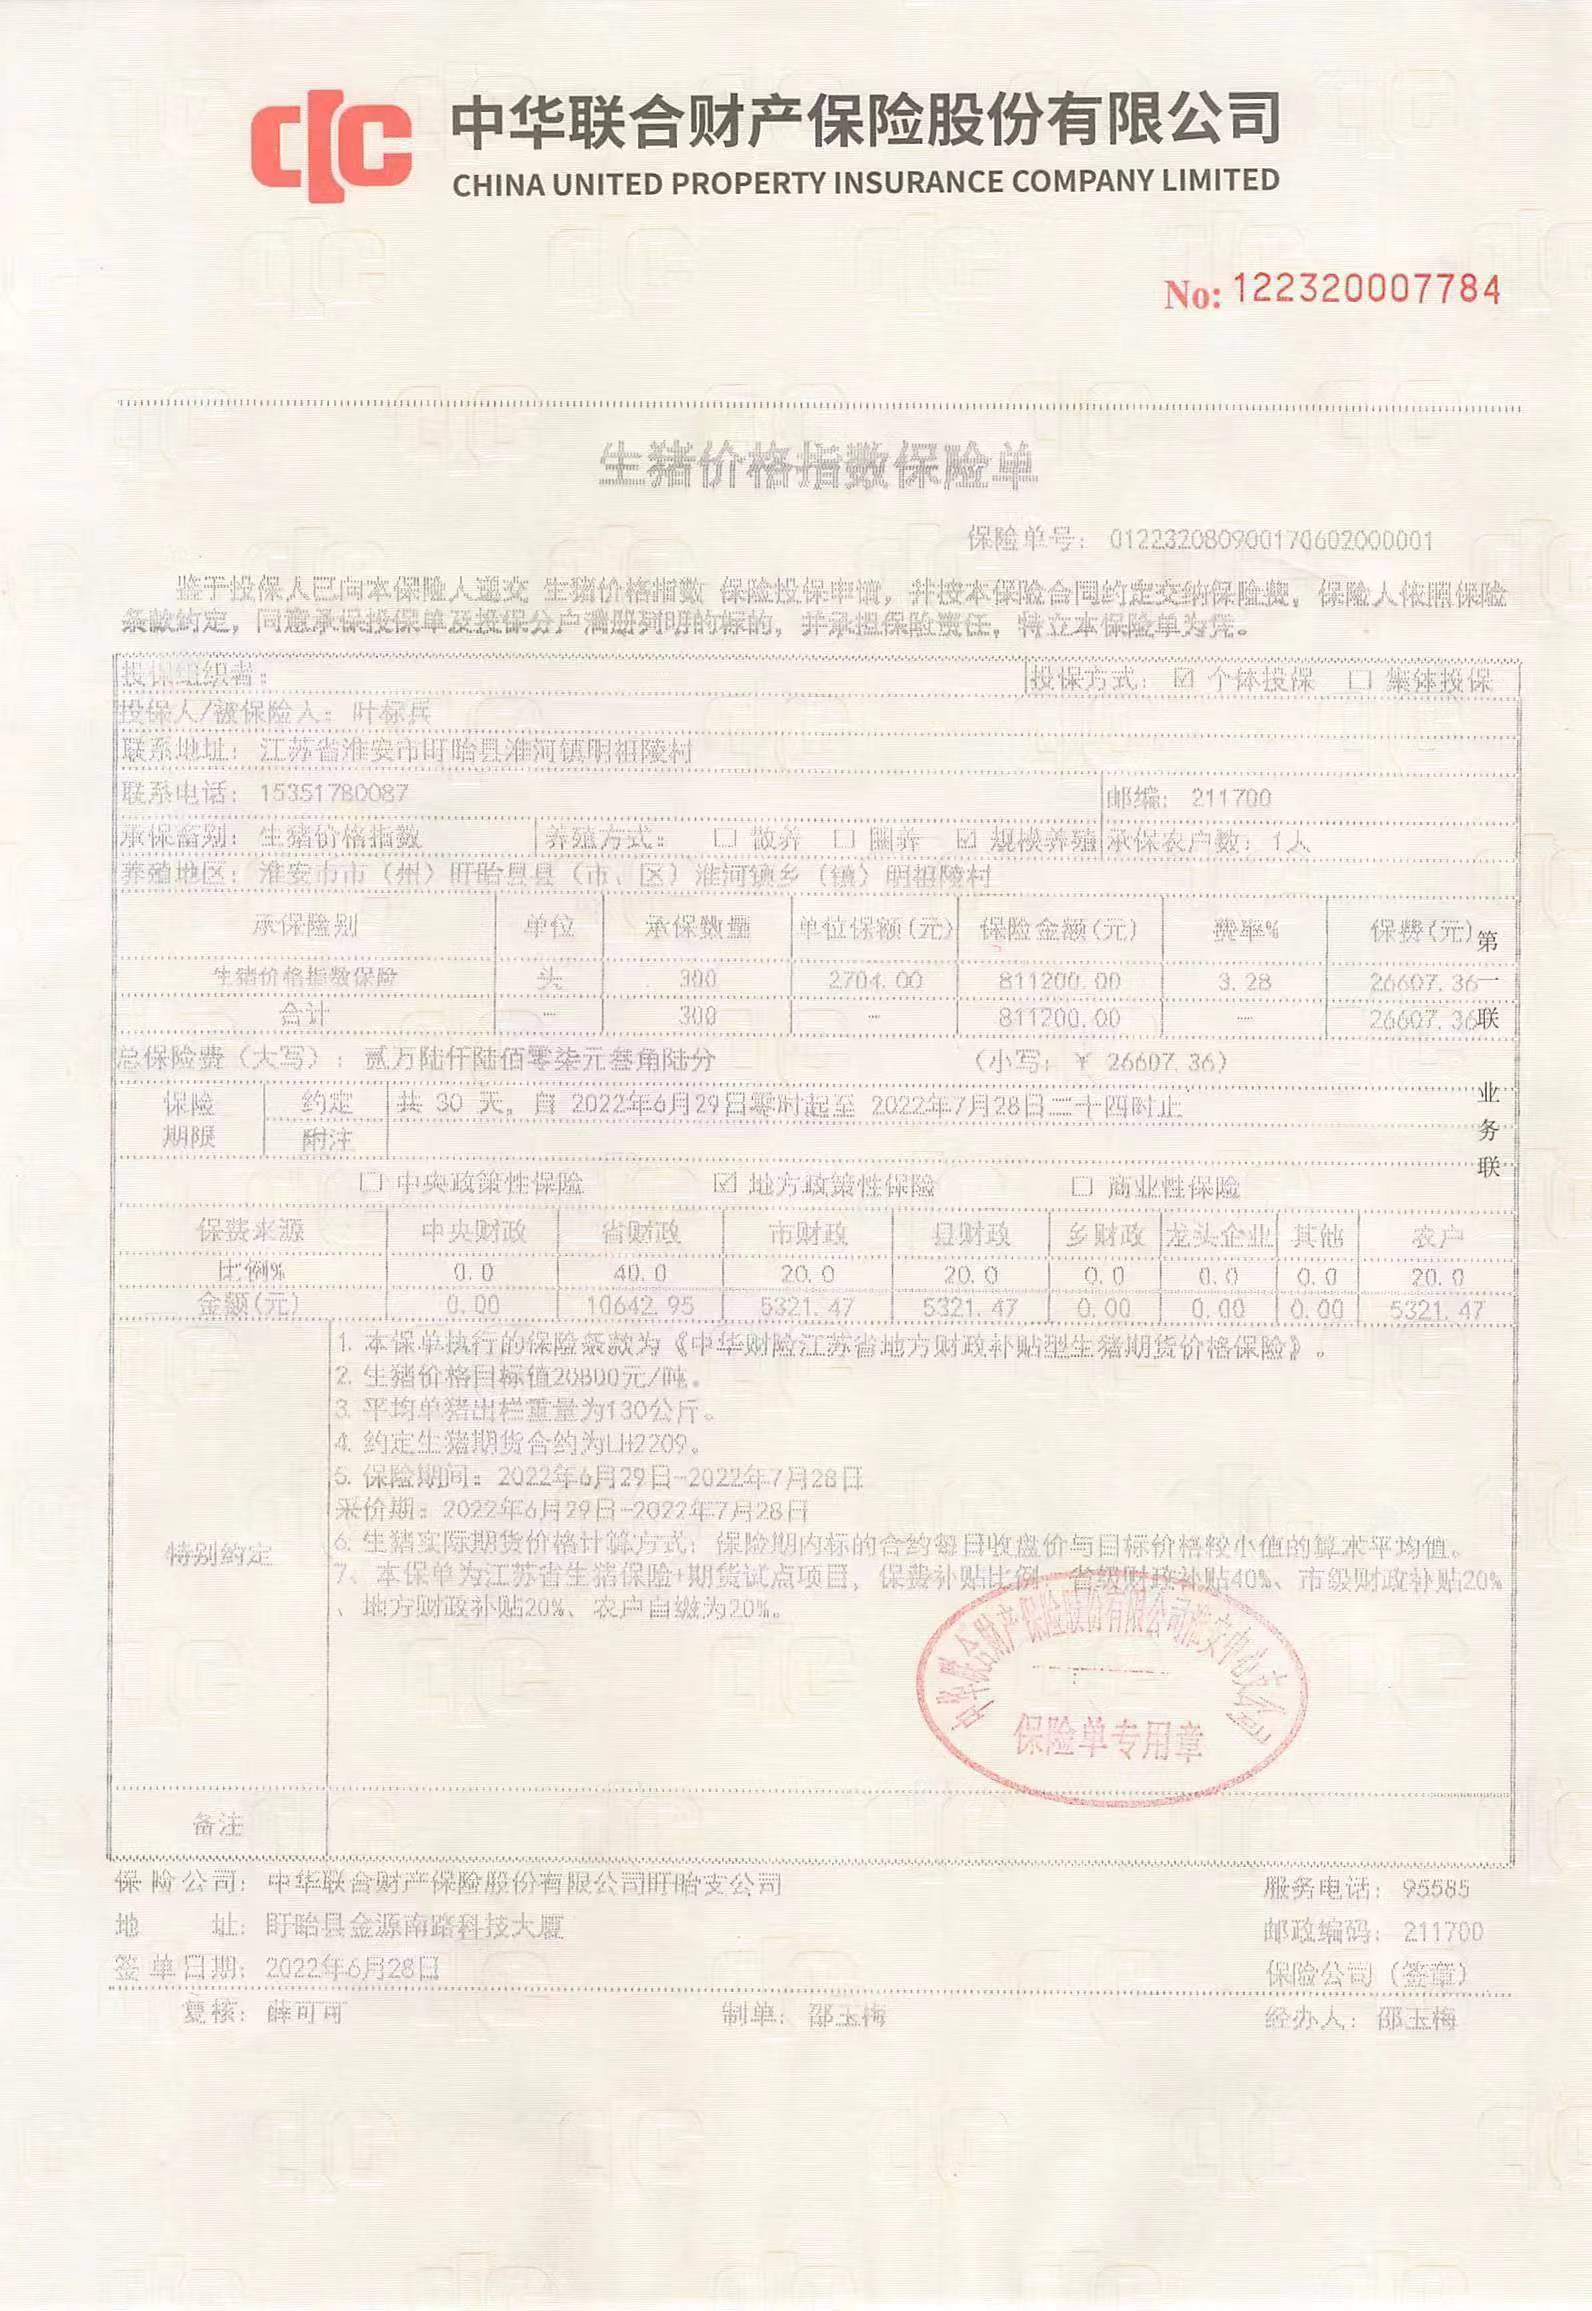 淮安市成功签署政策性生猪期货价格保险全省第一单